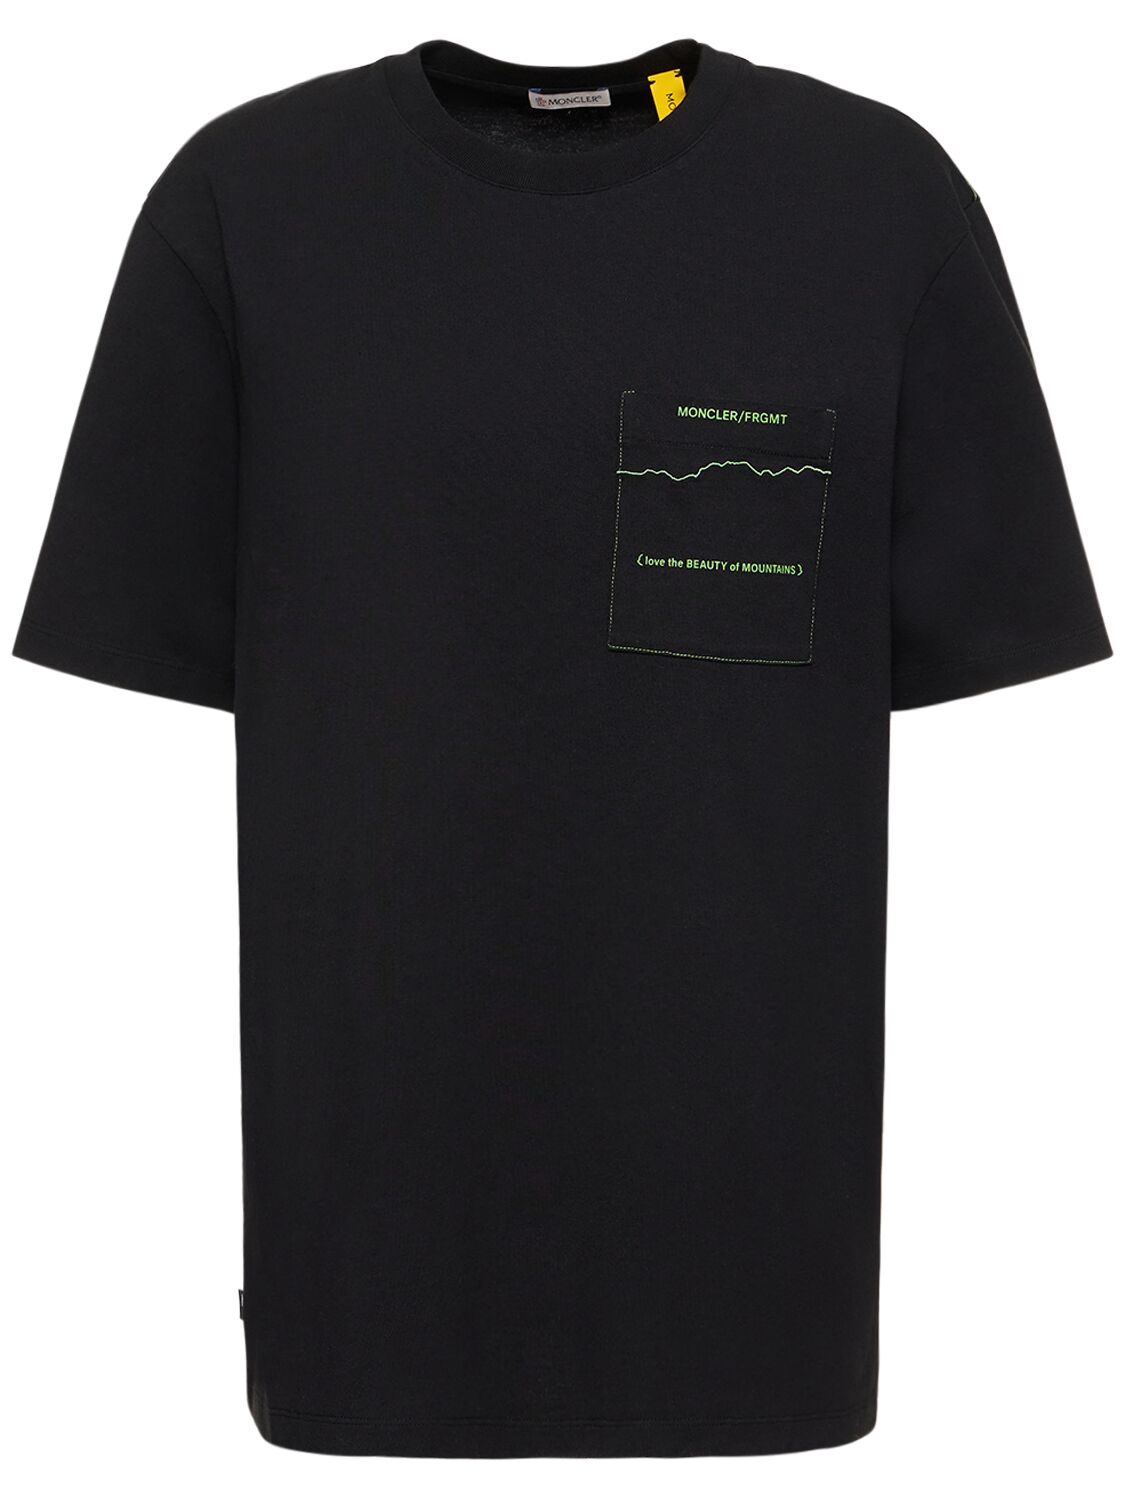 Moncler X Frgmt Mountain Jersey T-shirt